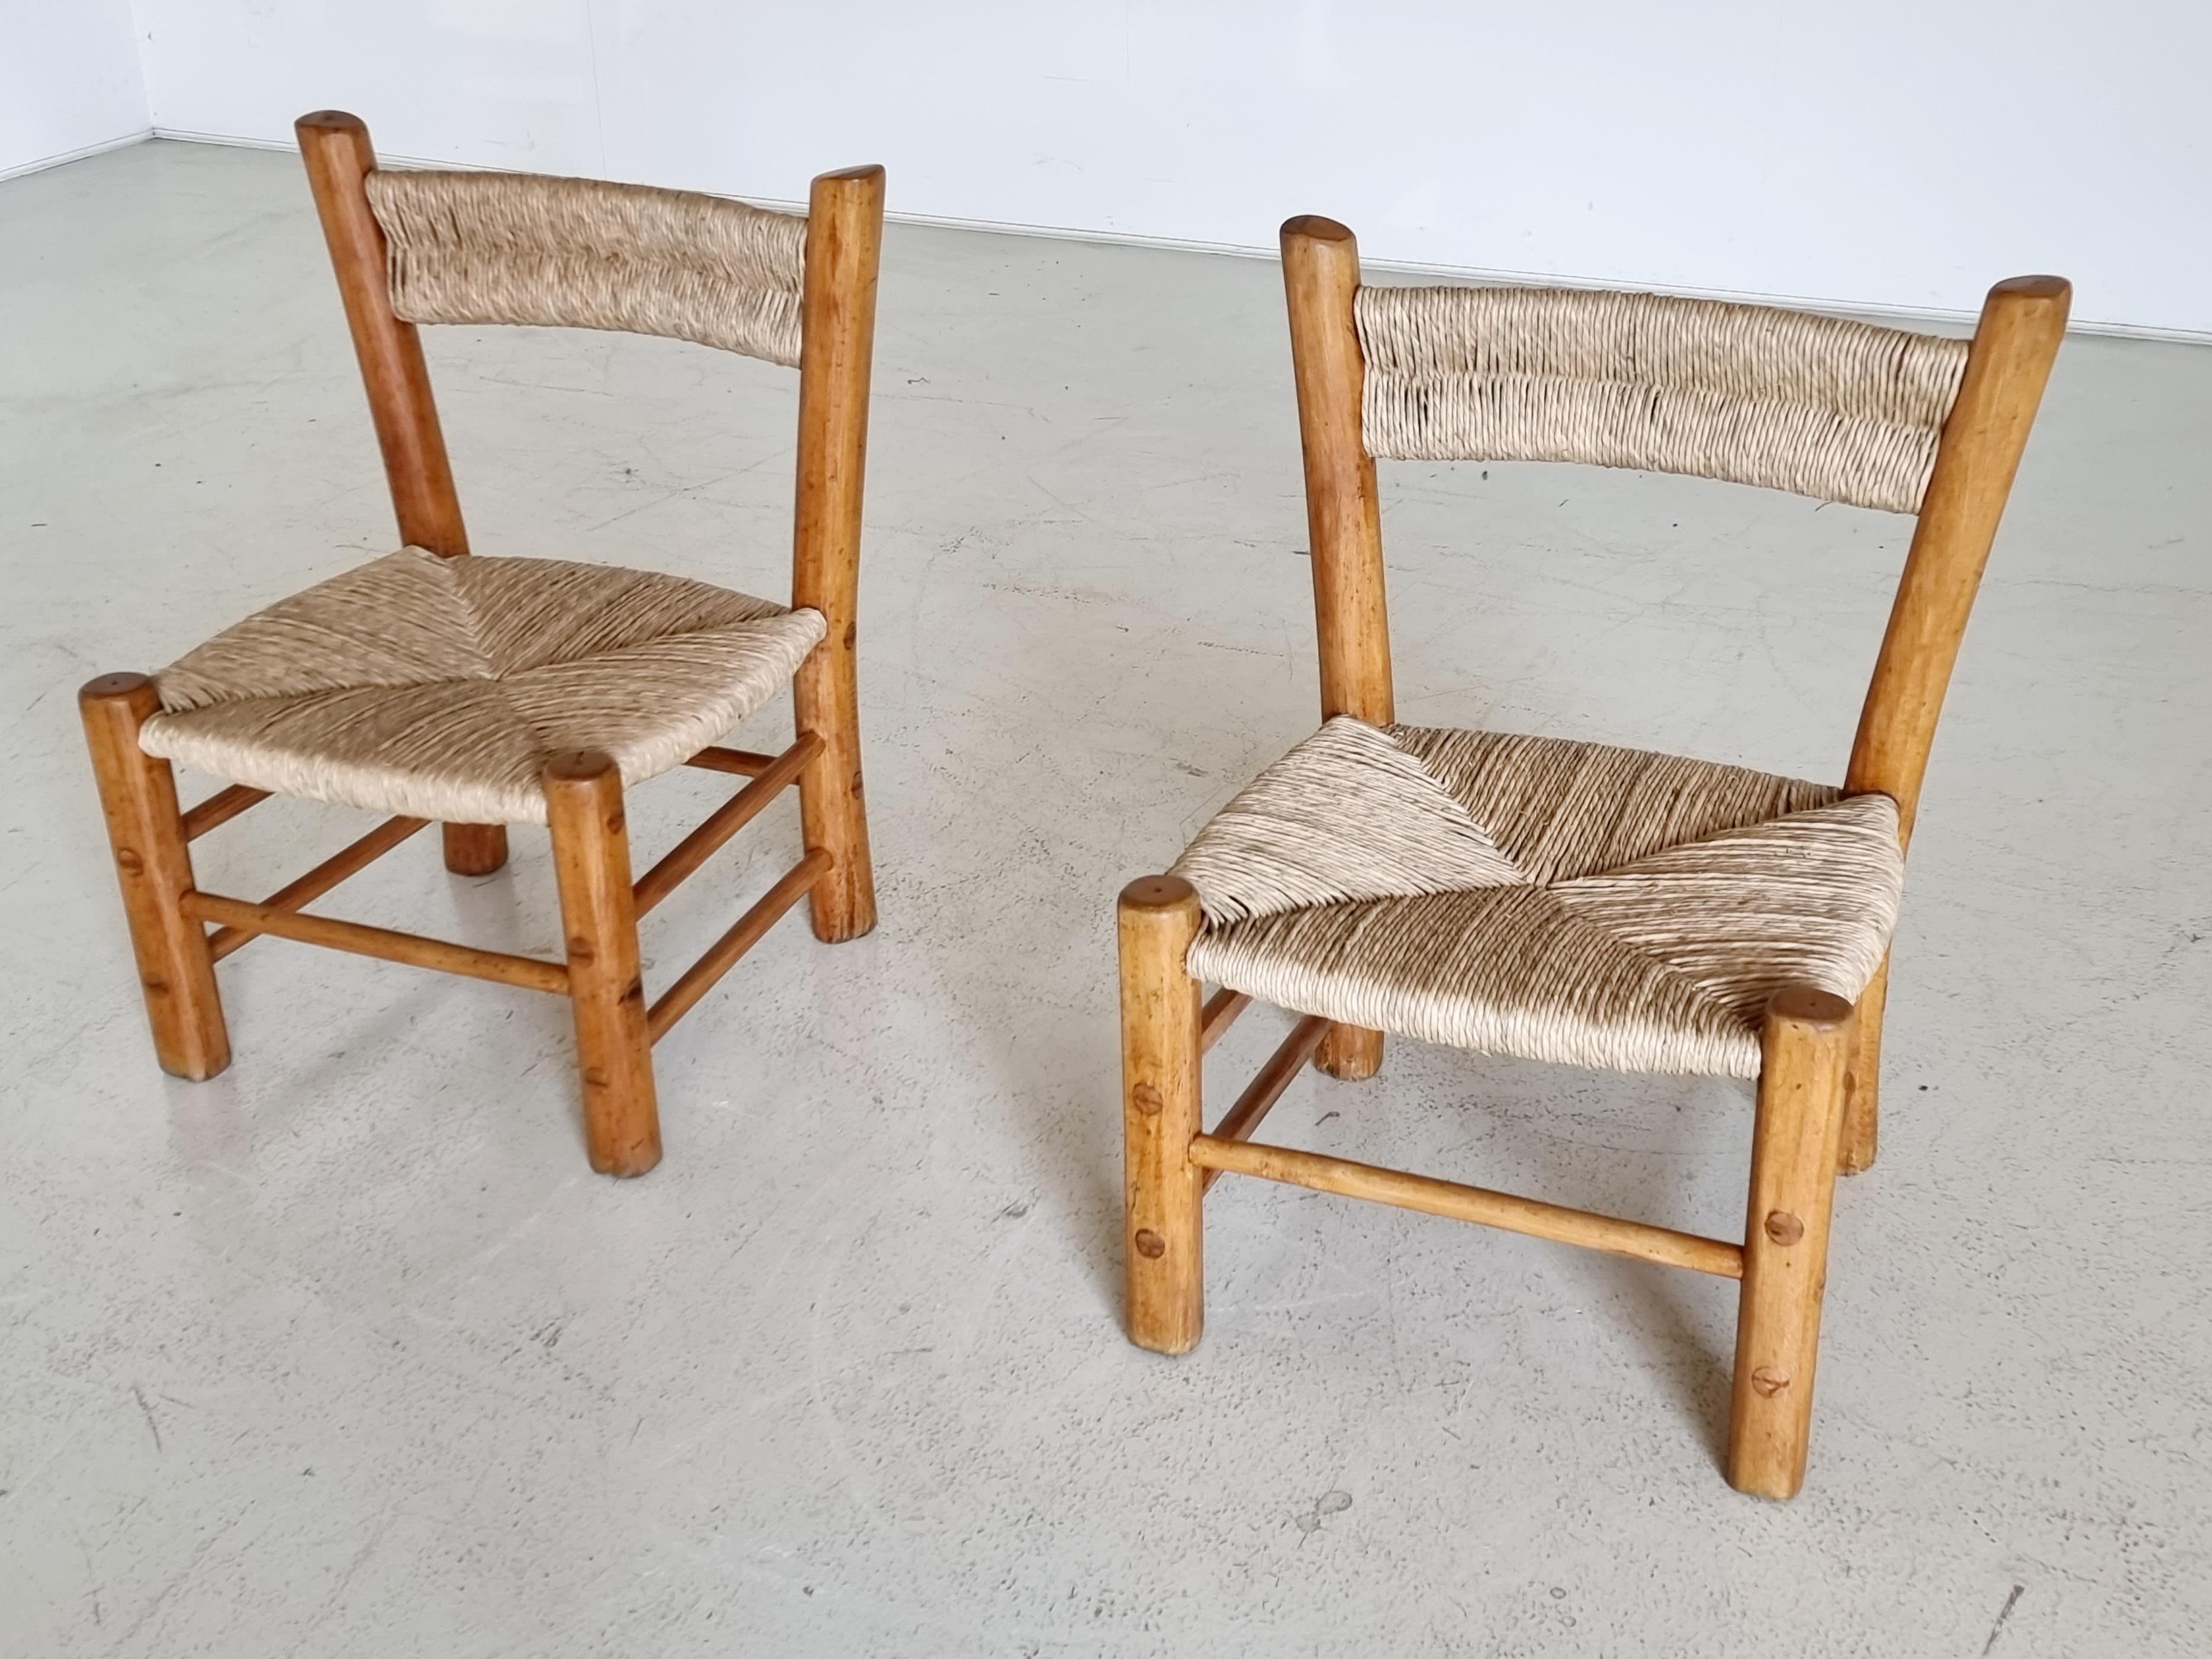 Ensemble de 2 chaises, bois d'orme, paille, France, années 1960.

Ces chaises paysannes magnifiquement construites ont un caractère rustique avec une grande qualité d'élégance. L'assise et le dossier sont recouverts de paille, ce qui ajoute une